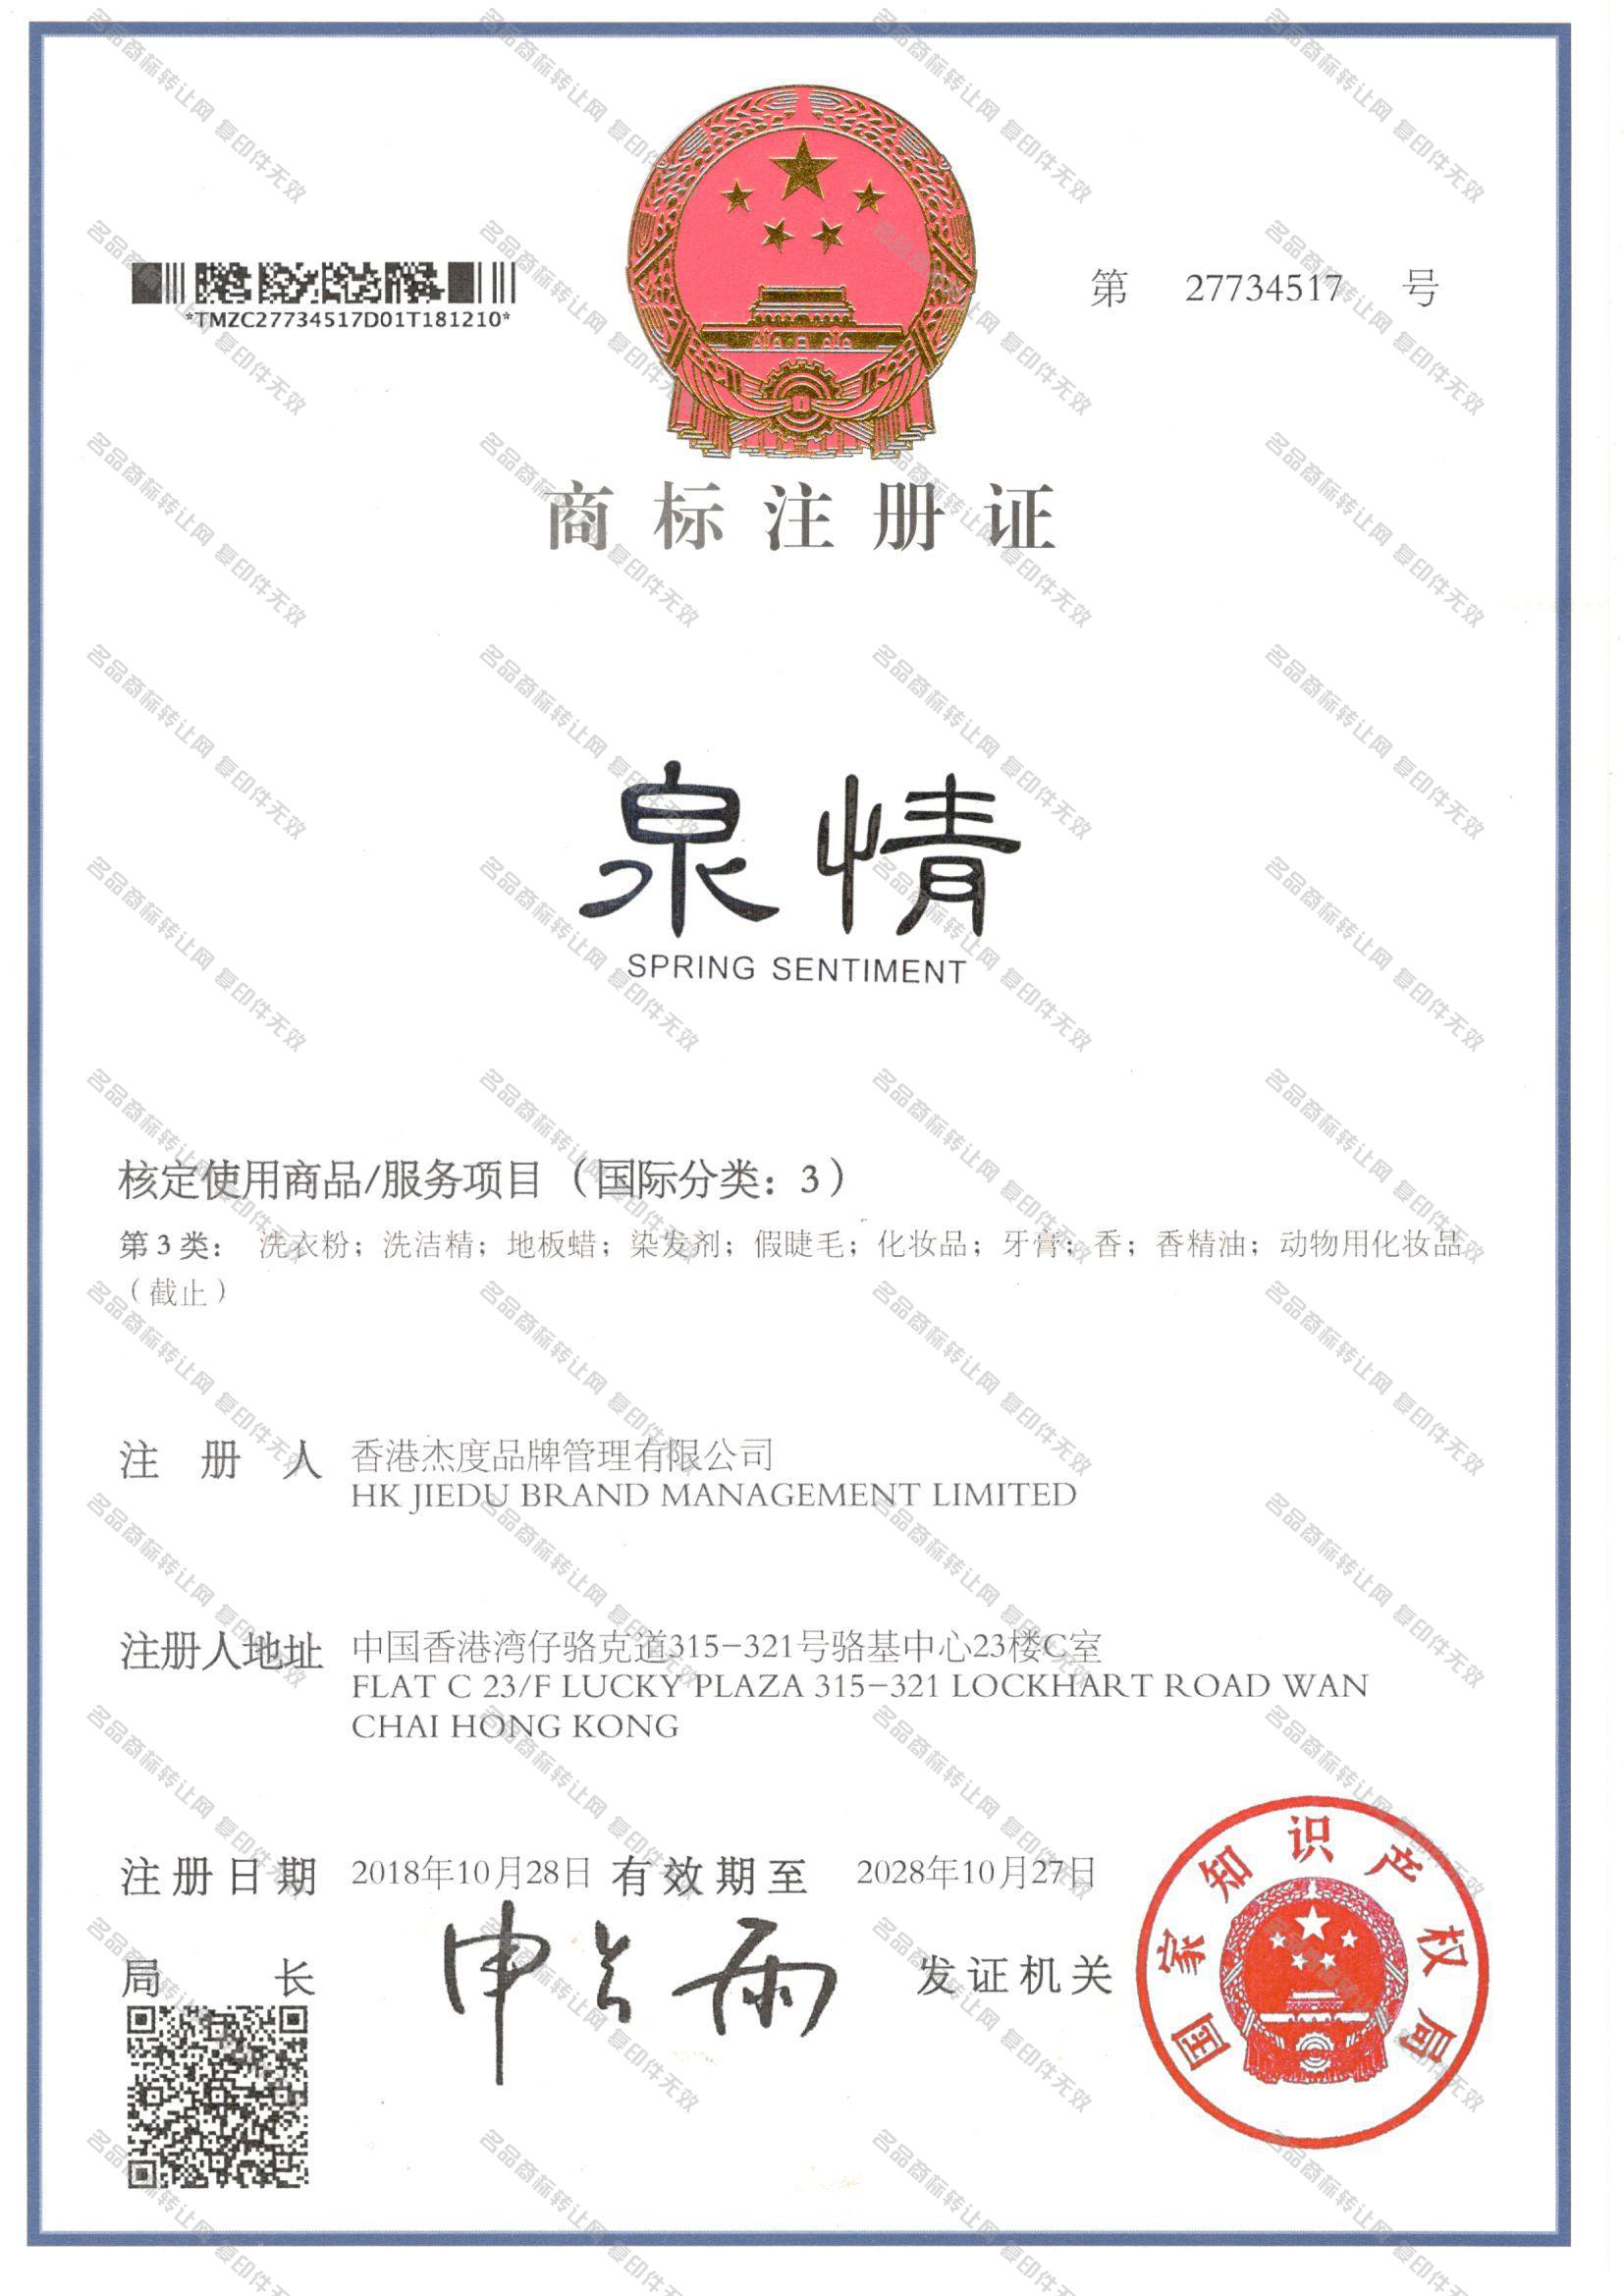 泉情 SPRING SENTIMENT注册证